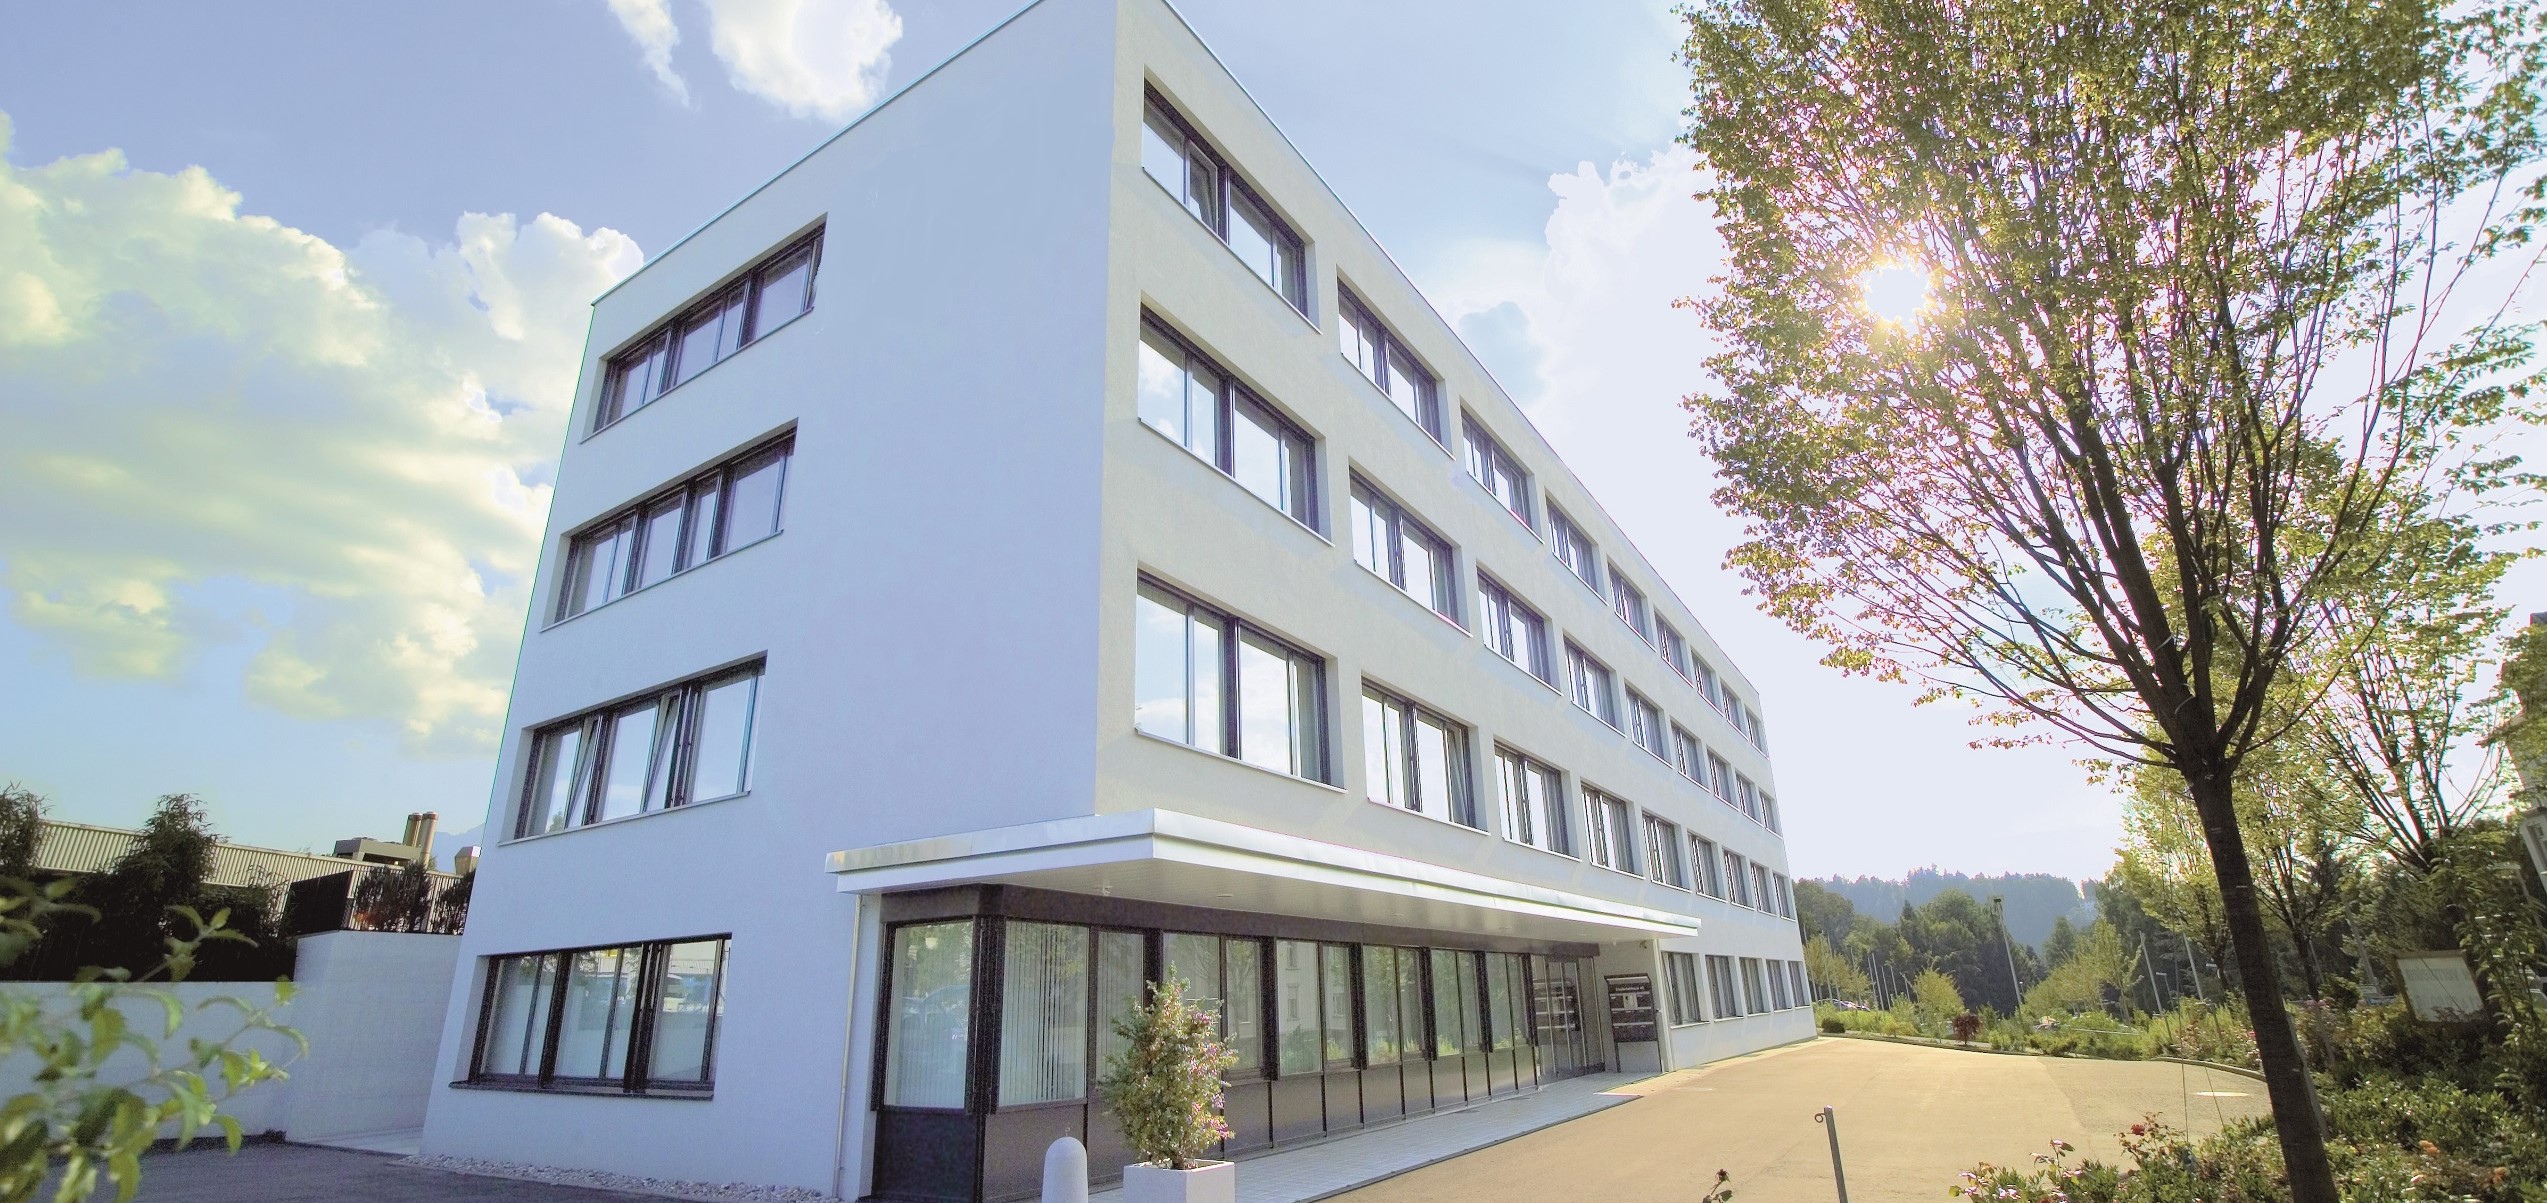 Neuer Hauptsitz Luzern